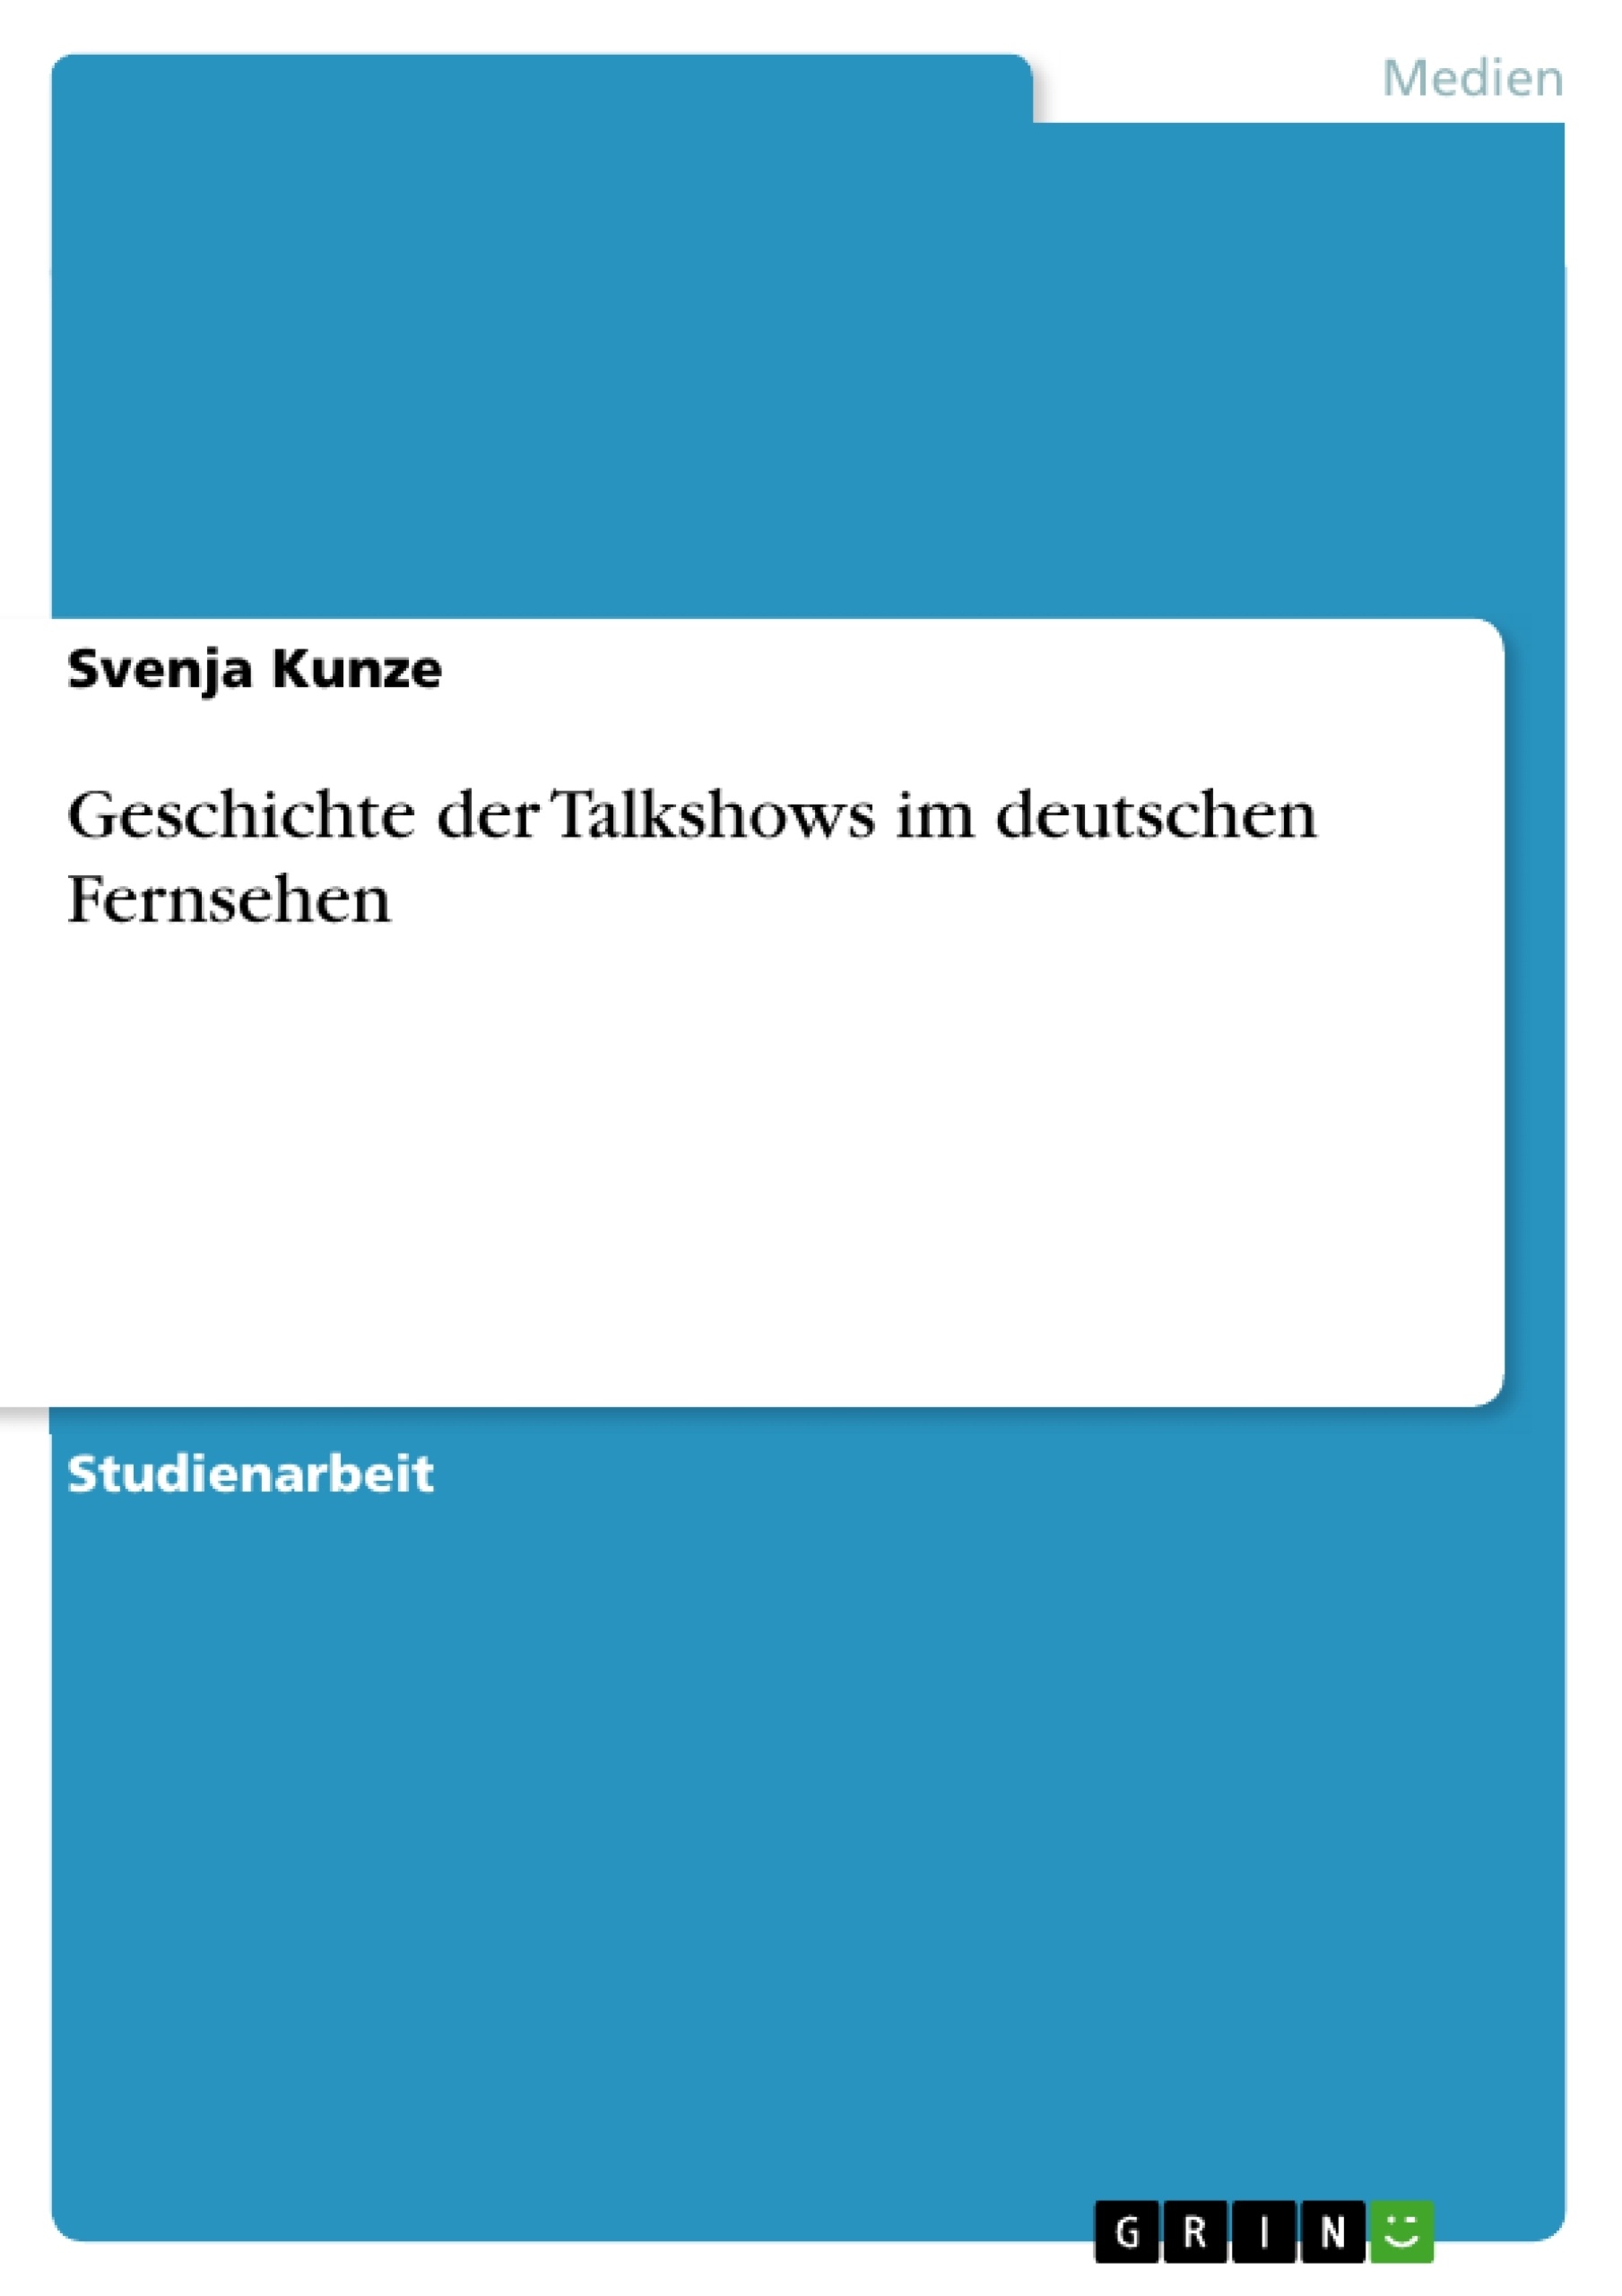 Title: Geschichte der Talkshows im deutschen Fernsehen